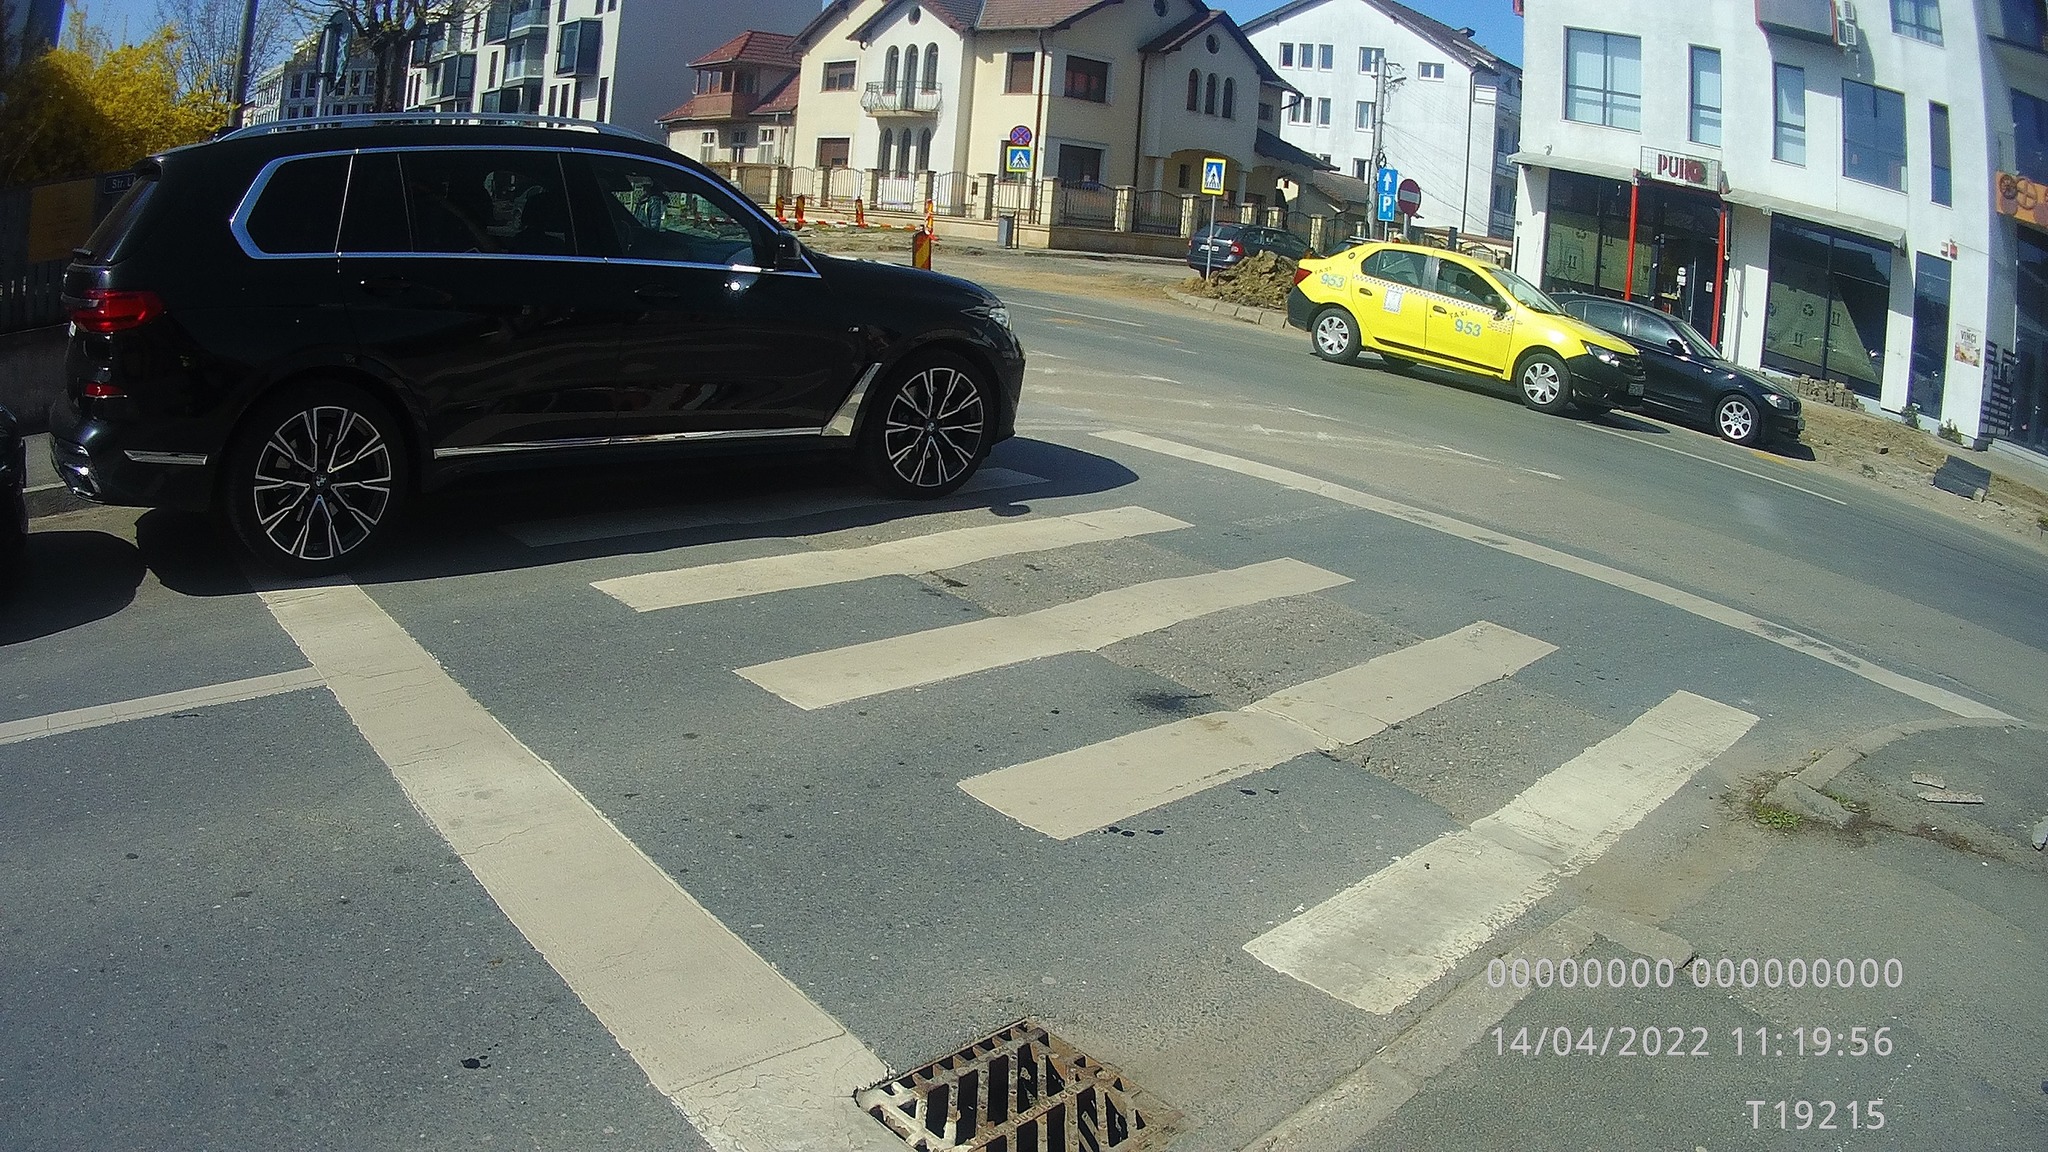 Primăria Sibiu anunță că 7 masini au fost ridicate și s-au dat 28 de amenzi, în 10 zile, pentru mașinile parcate pe trecerile de pietoni